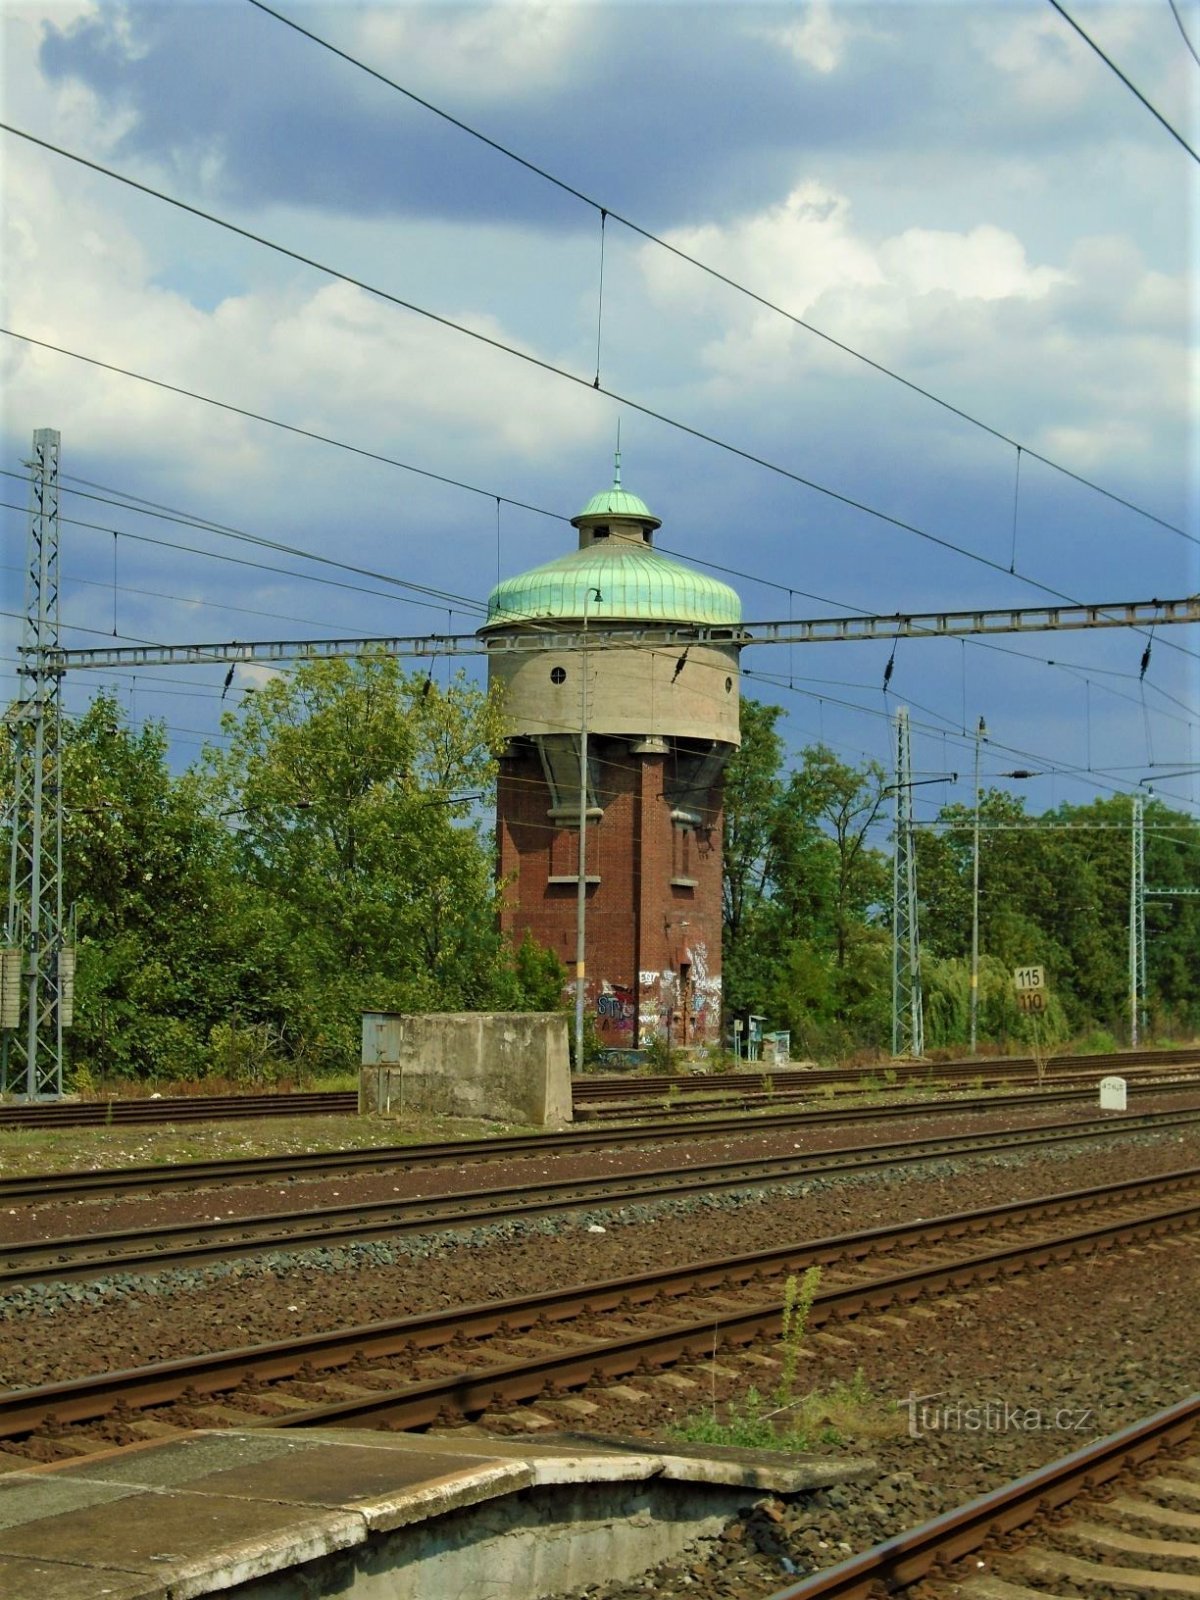 Tháp chứa nước từ năm 1927, do thợ xây Antonín Hádl và František Há xây dựng